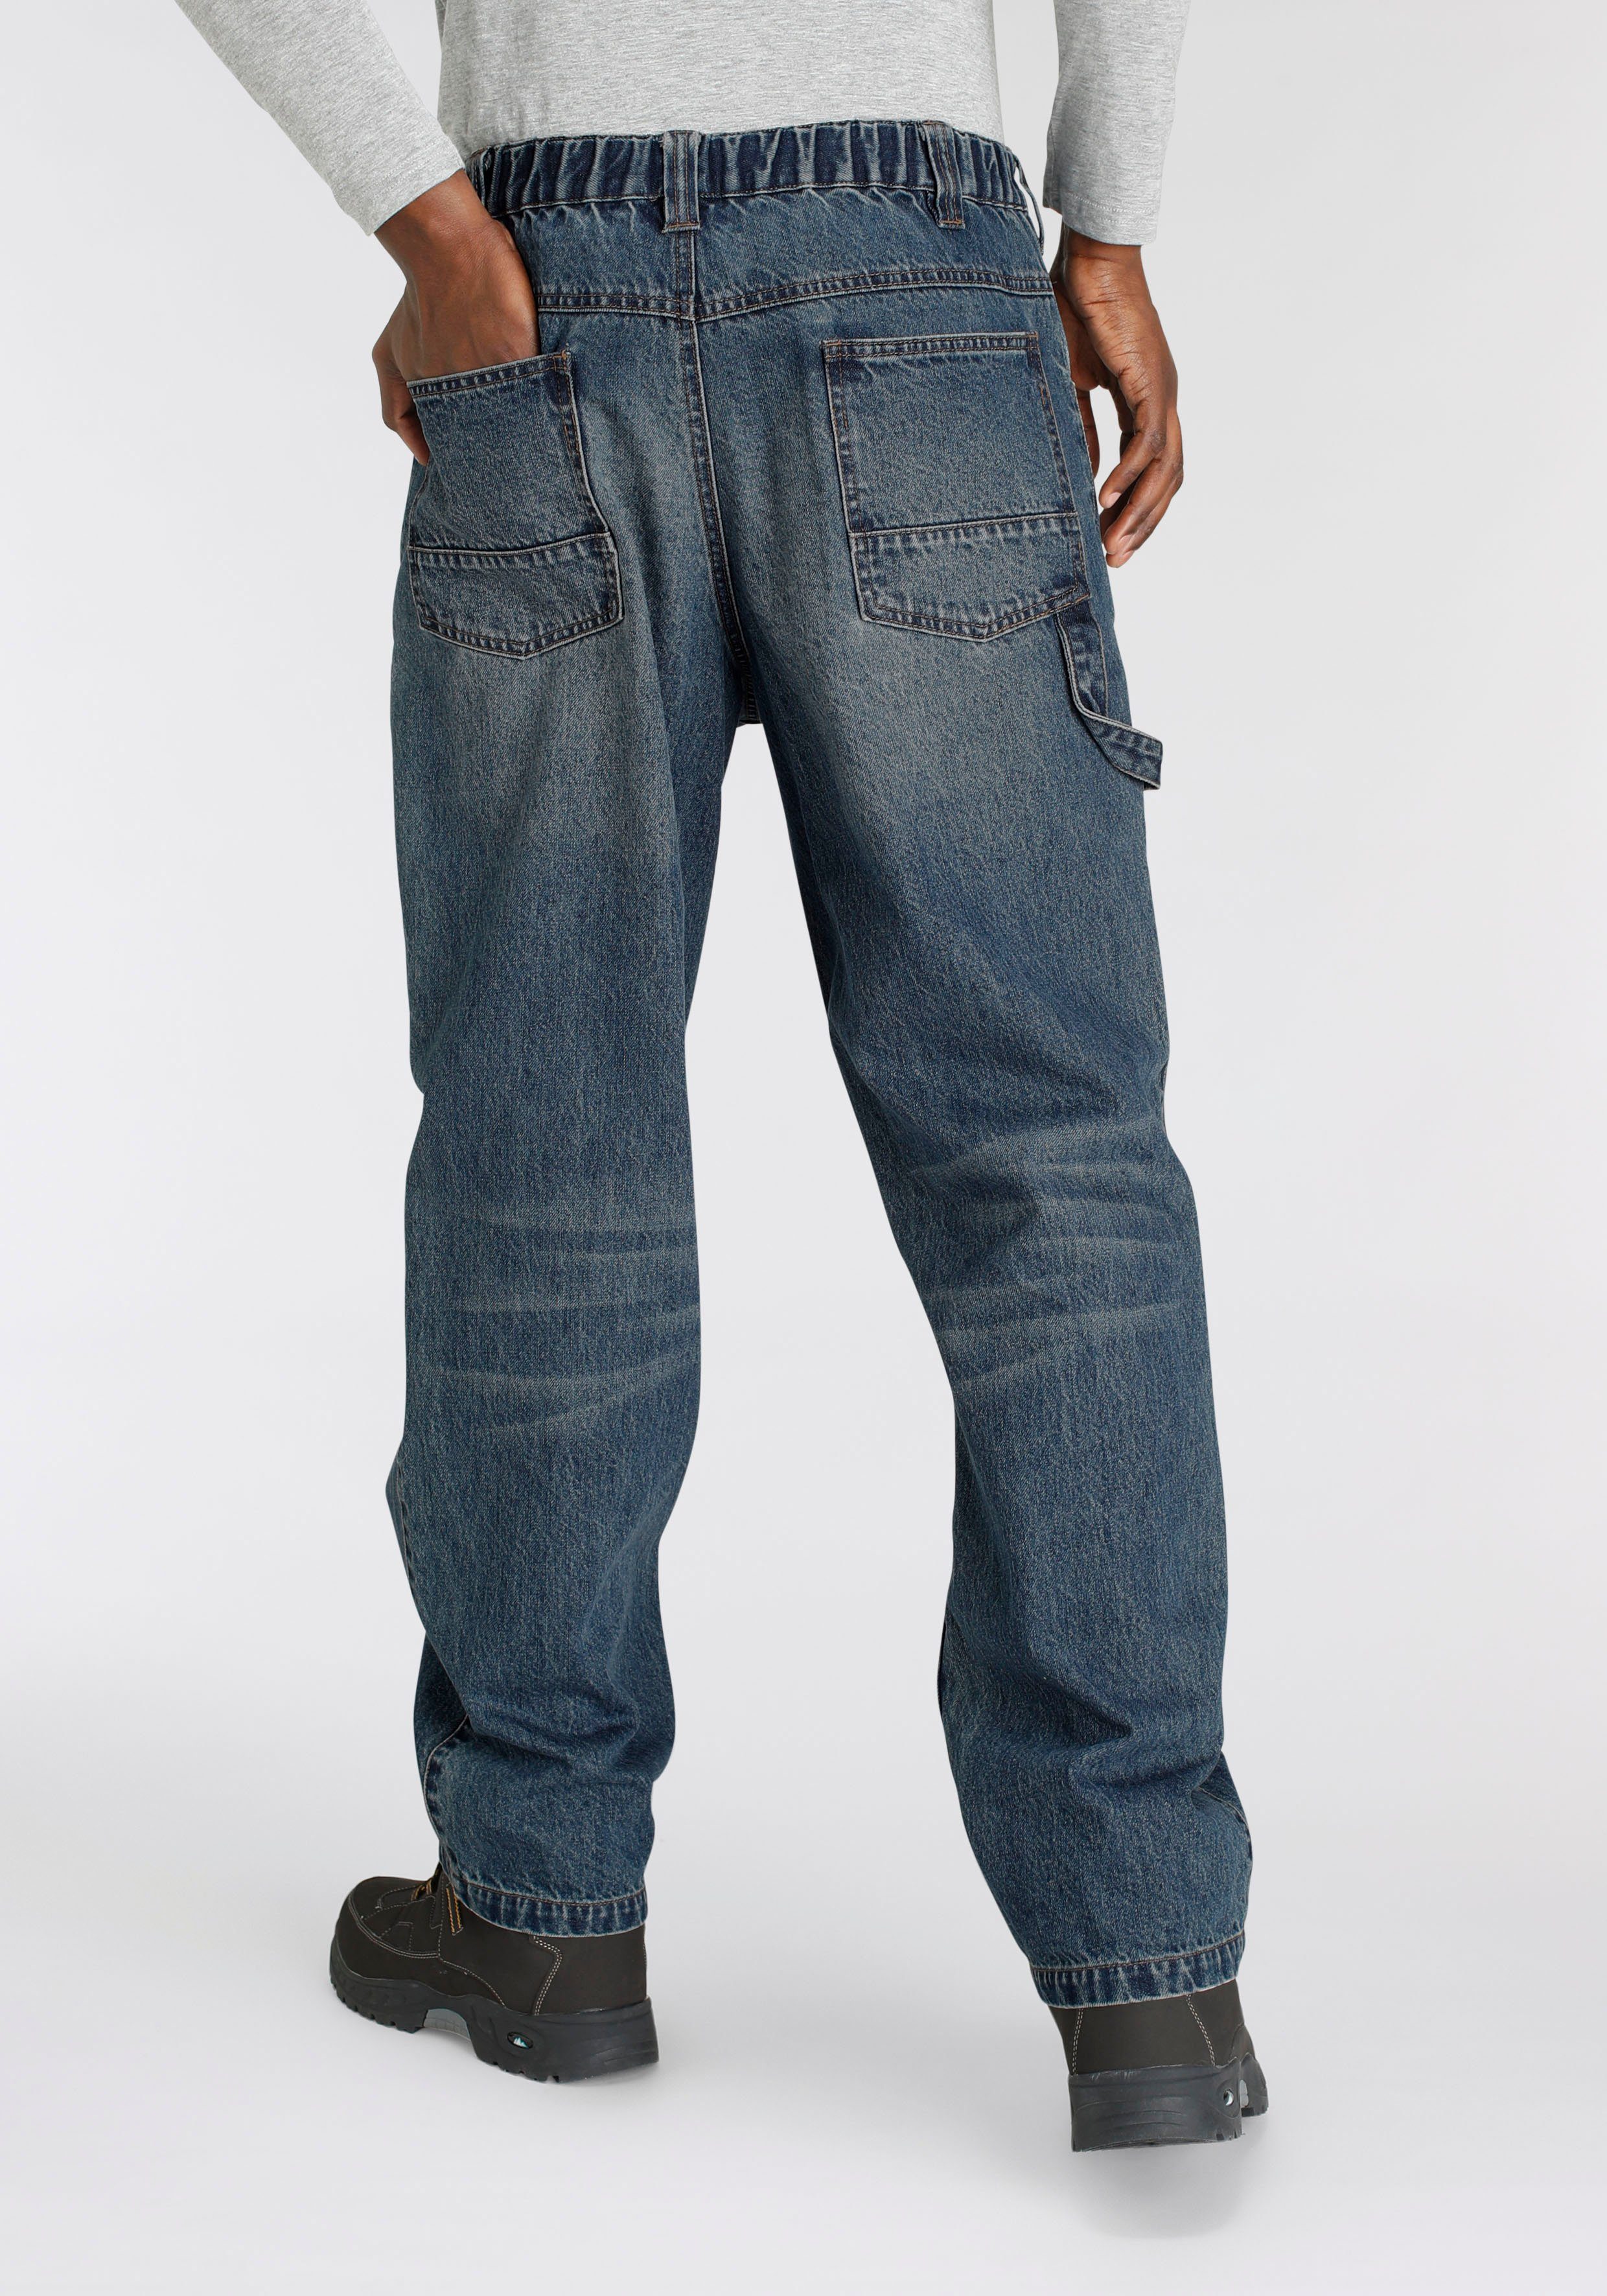 Jeansstoff, Cargo dehnbarem Country Baumwolle, Northern Arbeitshose (aus robuster fit) praktischen 6 Bund, mit Jeans 100% comfort Taschen mit